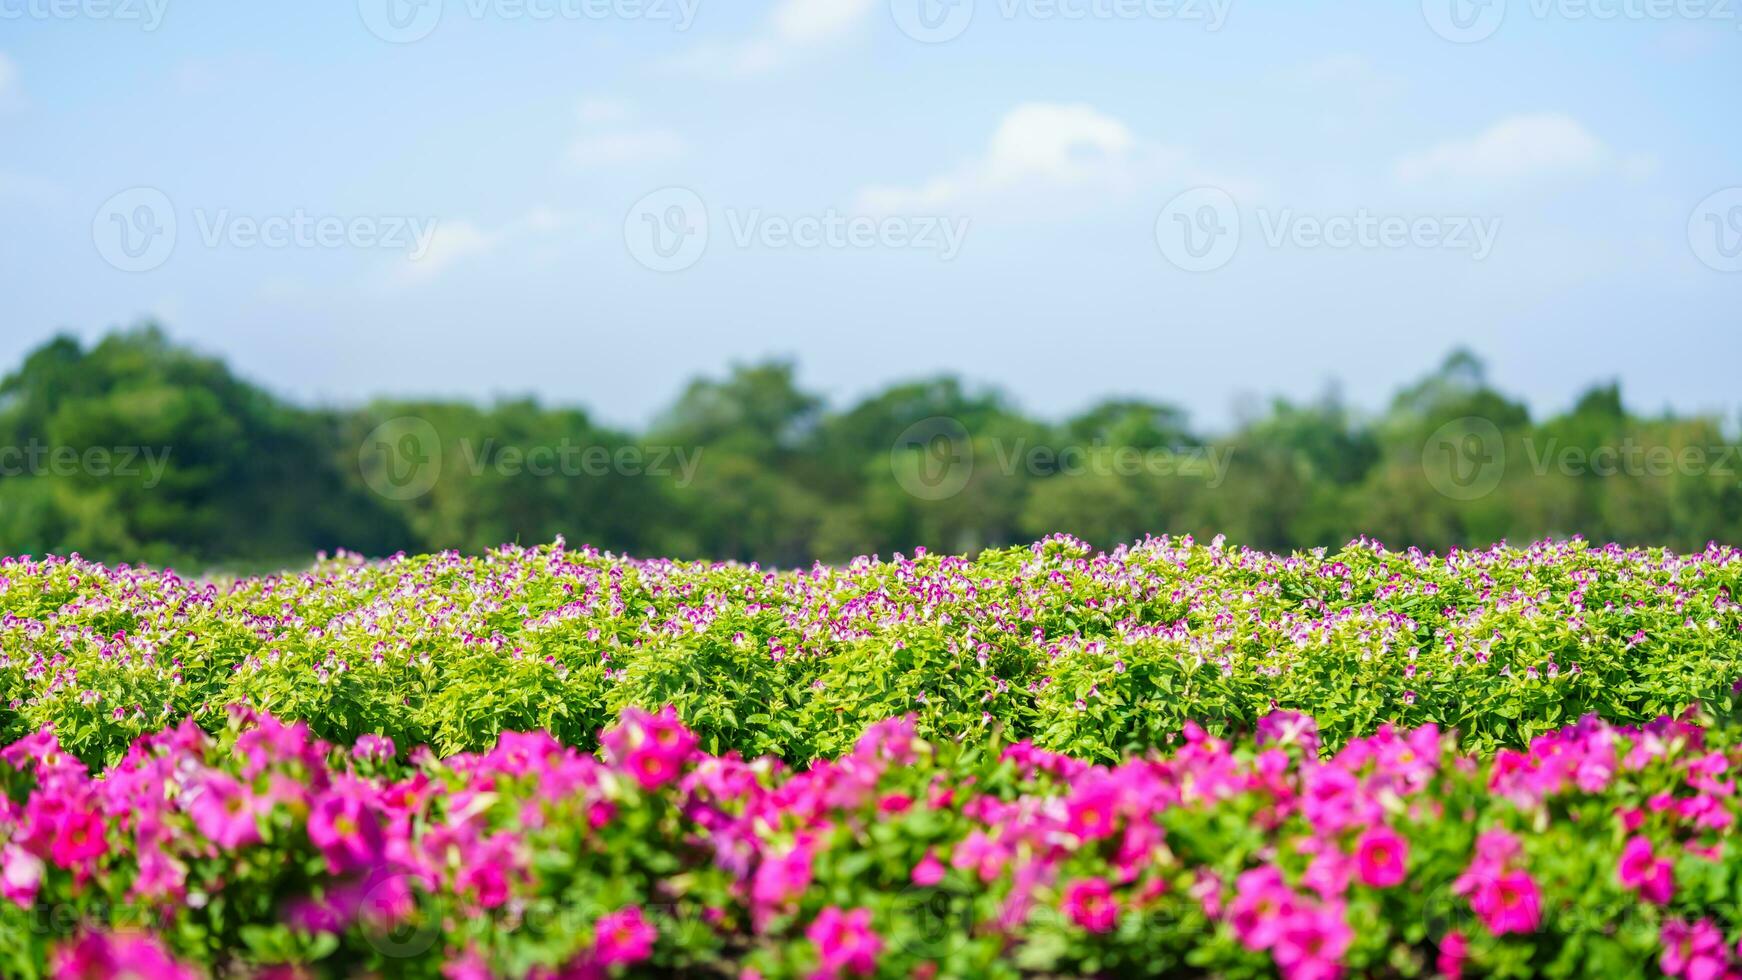 natuur visie van roze bloem en groen blad met blauw lucht onder zonlicht met kopiëren ruimte gebruik makend van net zo achtergrond natuurlijk landschap, ecologie behang Hoes bladzijde concept. foto